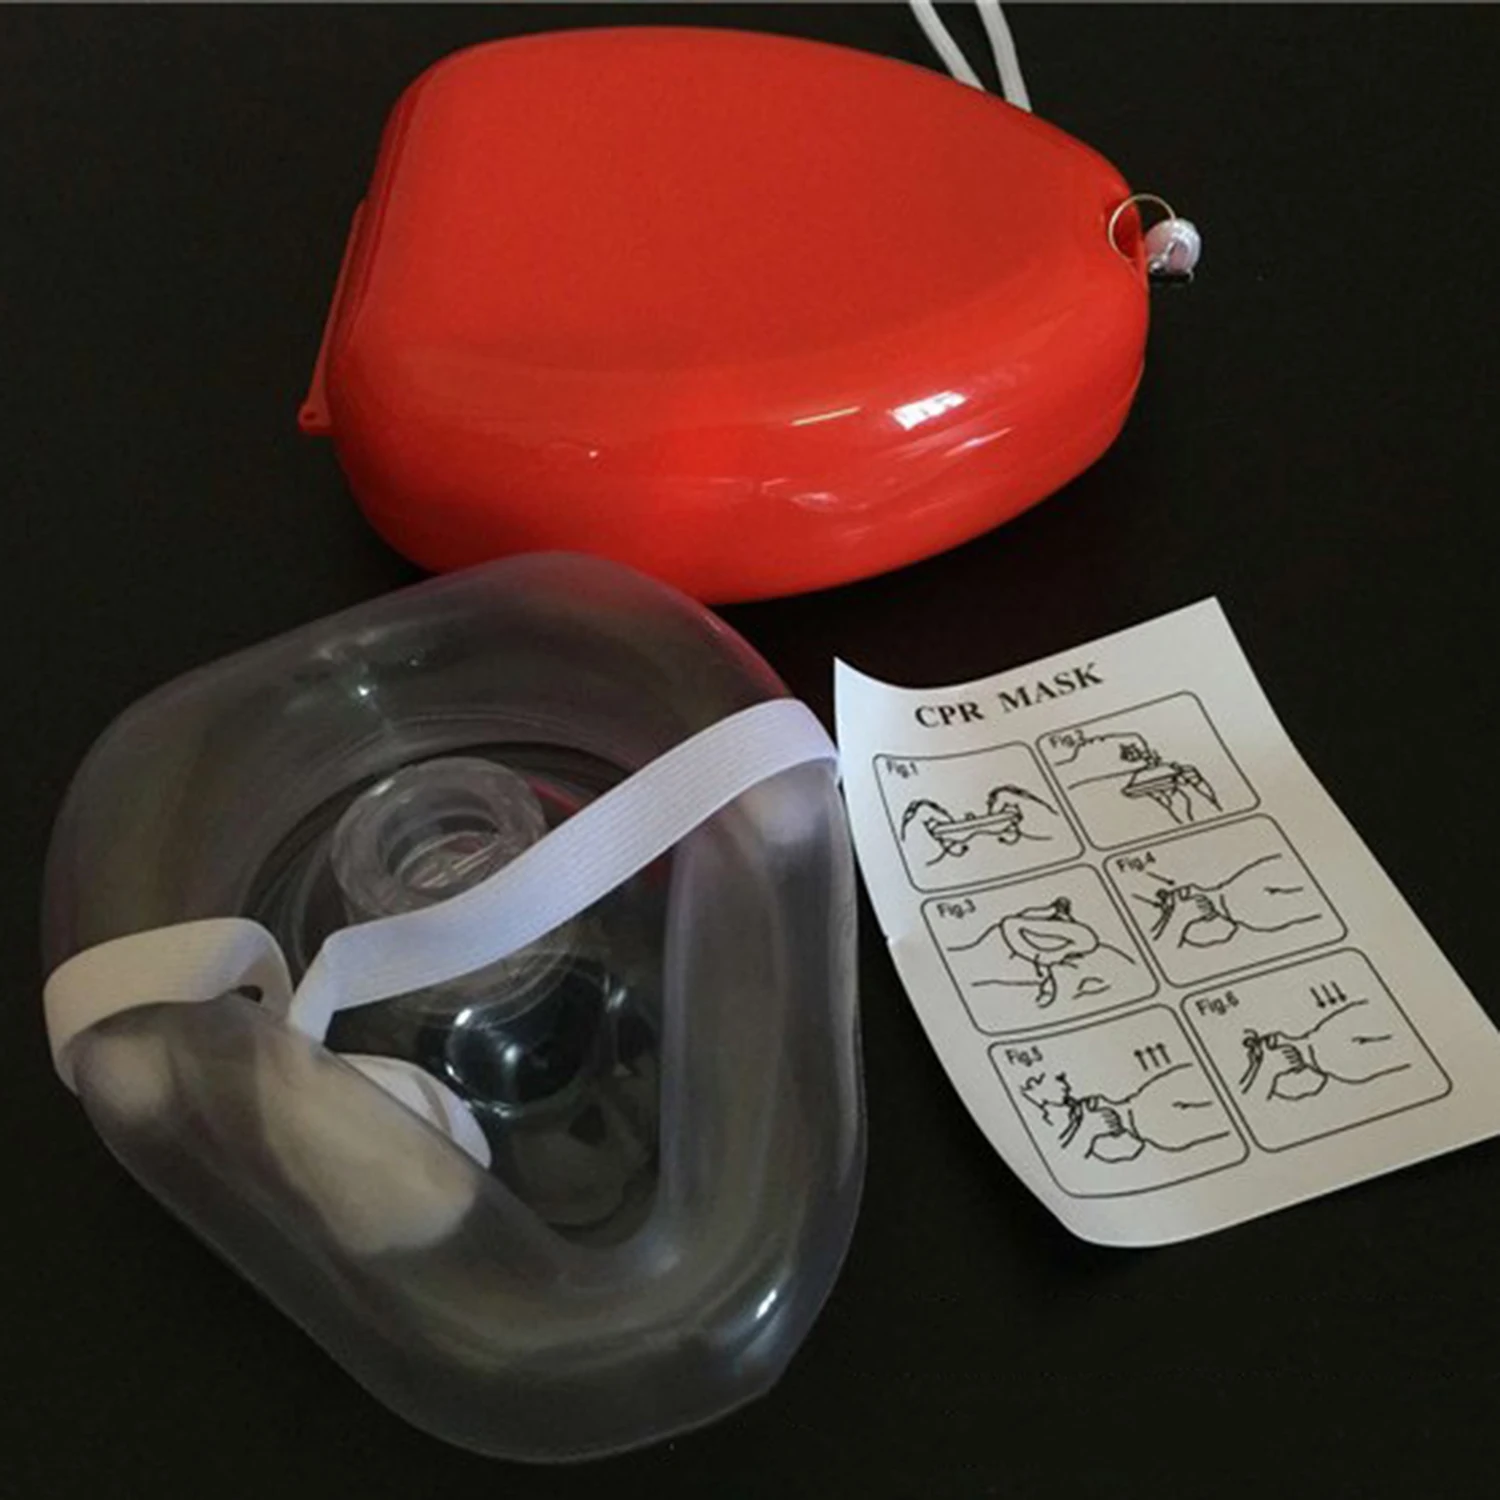 Маска для слр. Карманная маска для ИВЛ "рот-маска" Laerdal. Маска для СЛР С клапаном. Карманная реанимационная маска для СЛР. Дыхательная маска для СЛР.